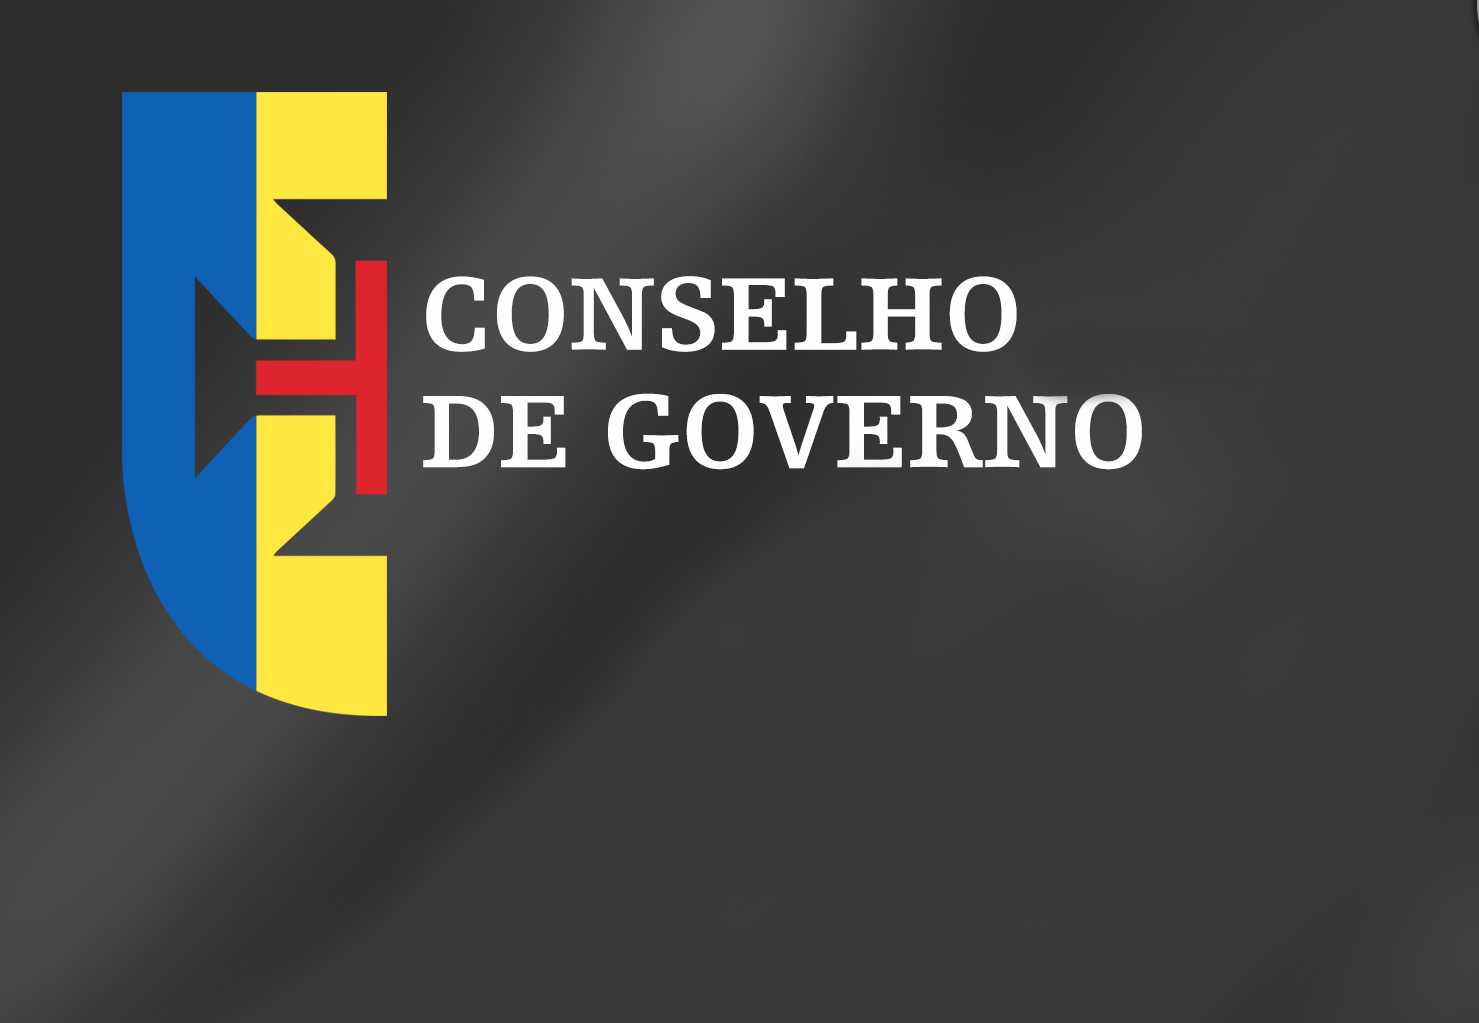 Conclusões Conselho de Governo - 4 de agosto de 2016